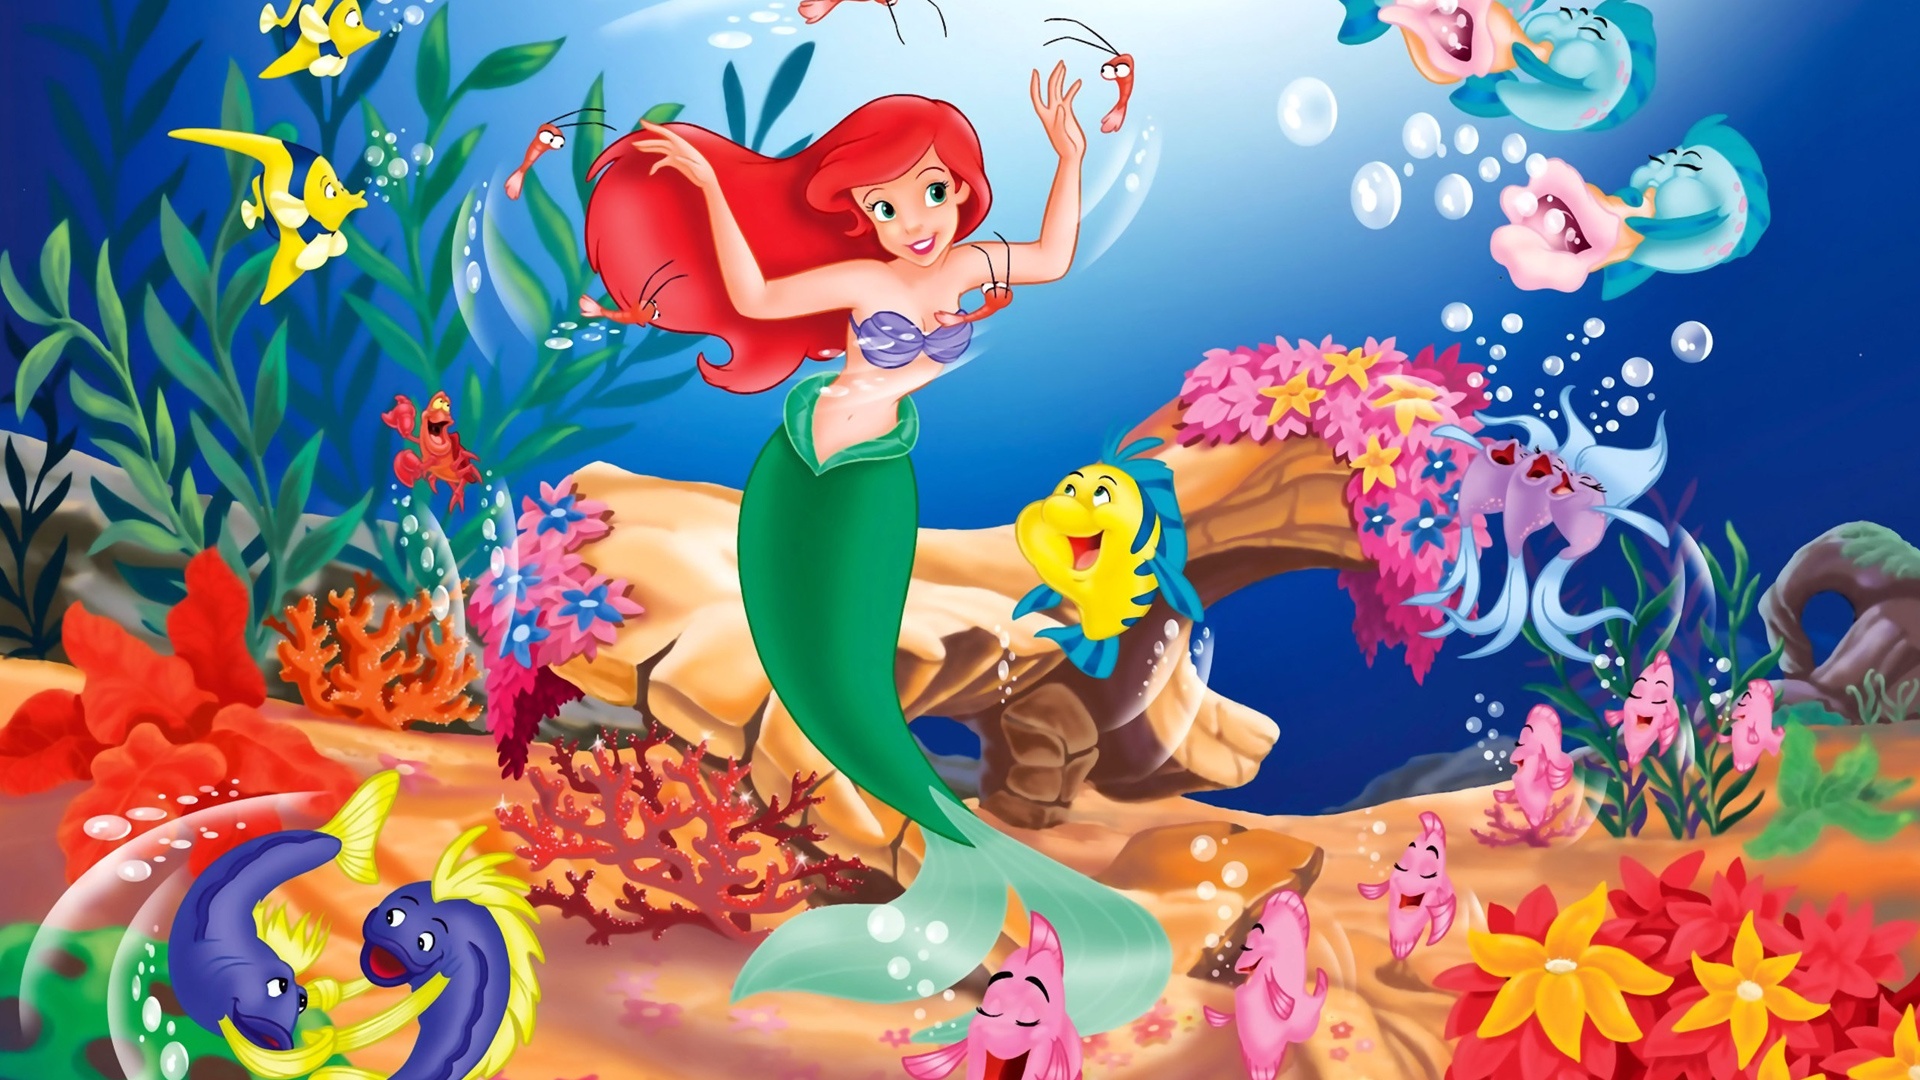 Disney The Little Mermaid Wallpapers HD 19202151080 HD 1920x1080